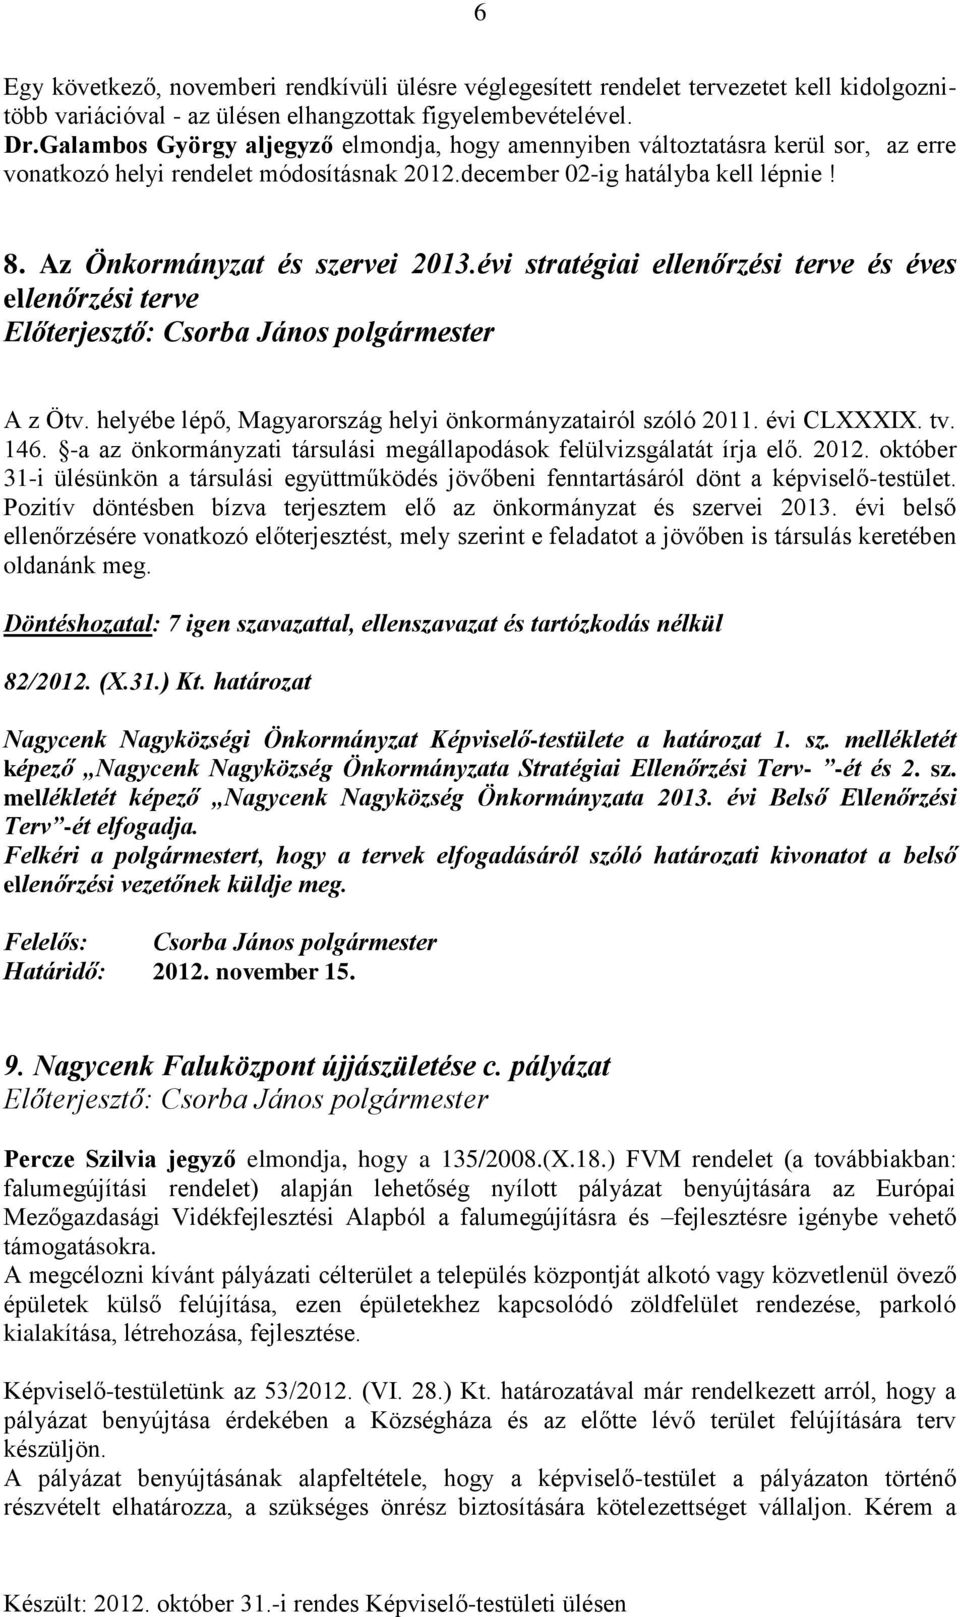 évi stratégiai ellenőrzési terve és éves ellenőrzési terve A z Ötv. helyébe lépő, Magyarország helyi önkormányzatairól szóló 2011. évi CLXXXIX. tv. 146.